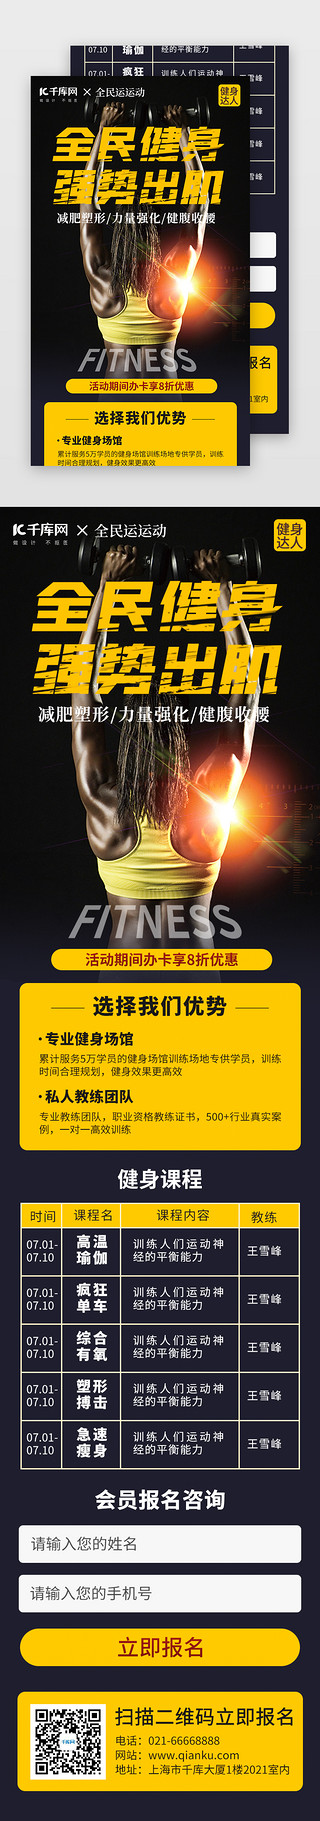 运动运动海报UI设计素材_全民健身运动H5